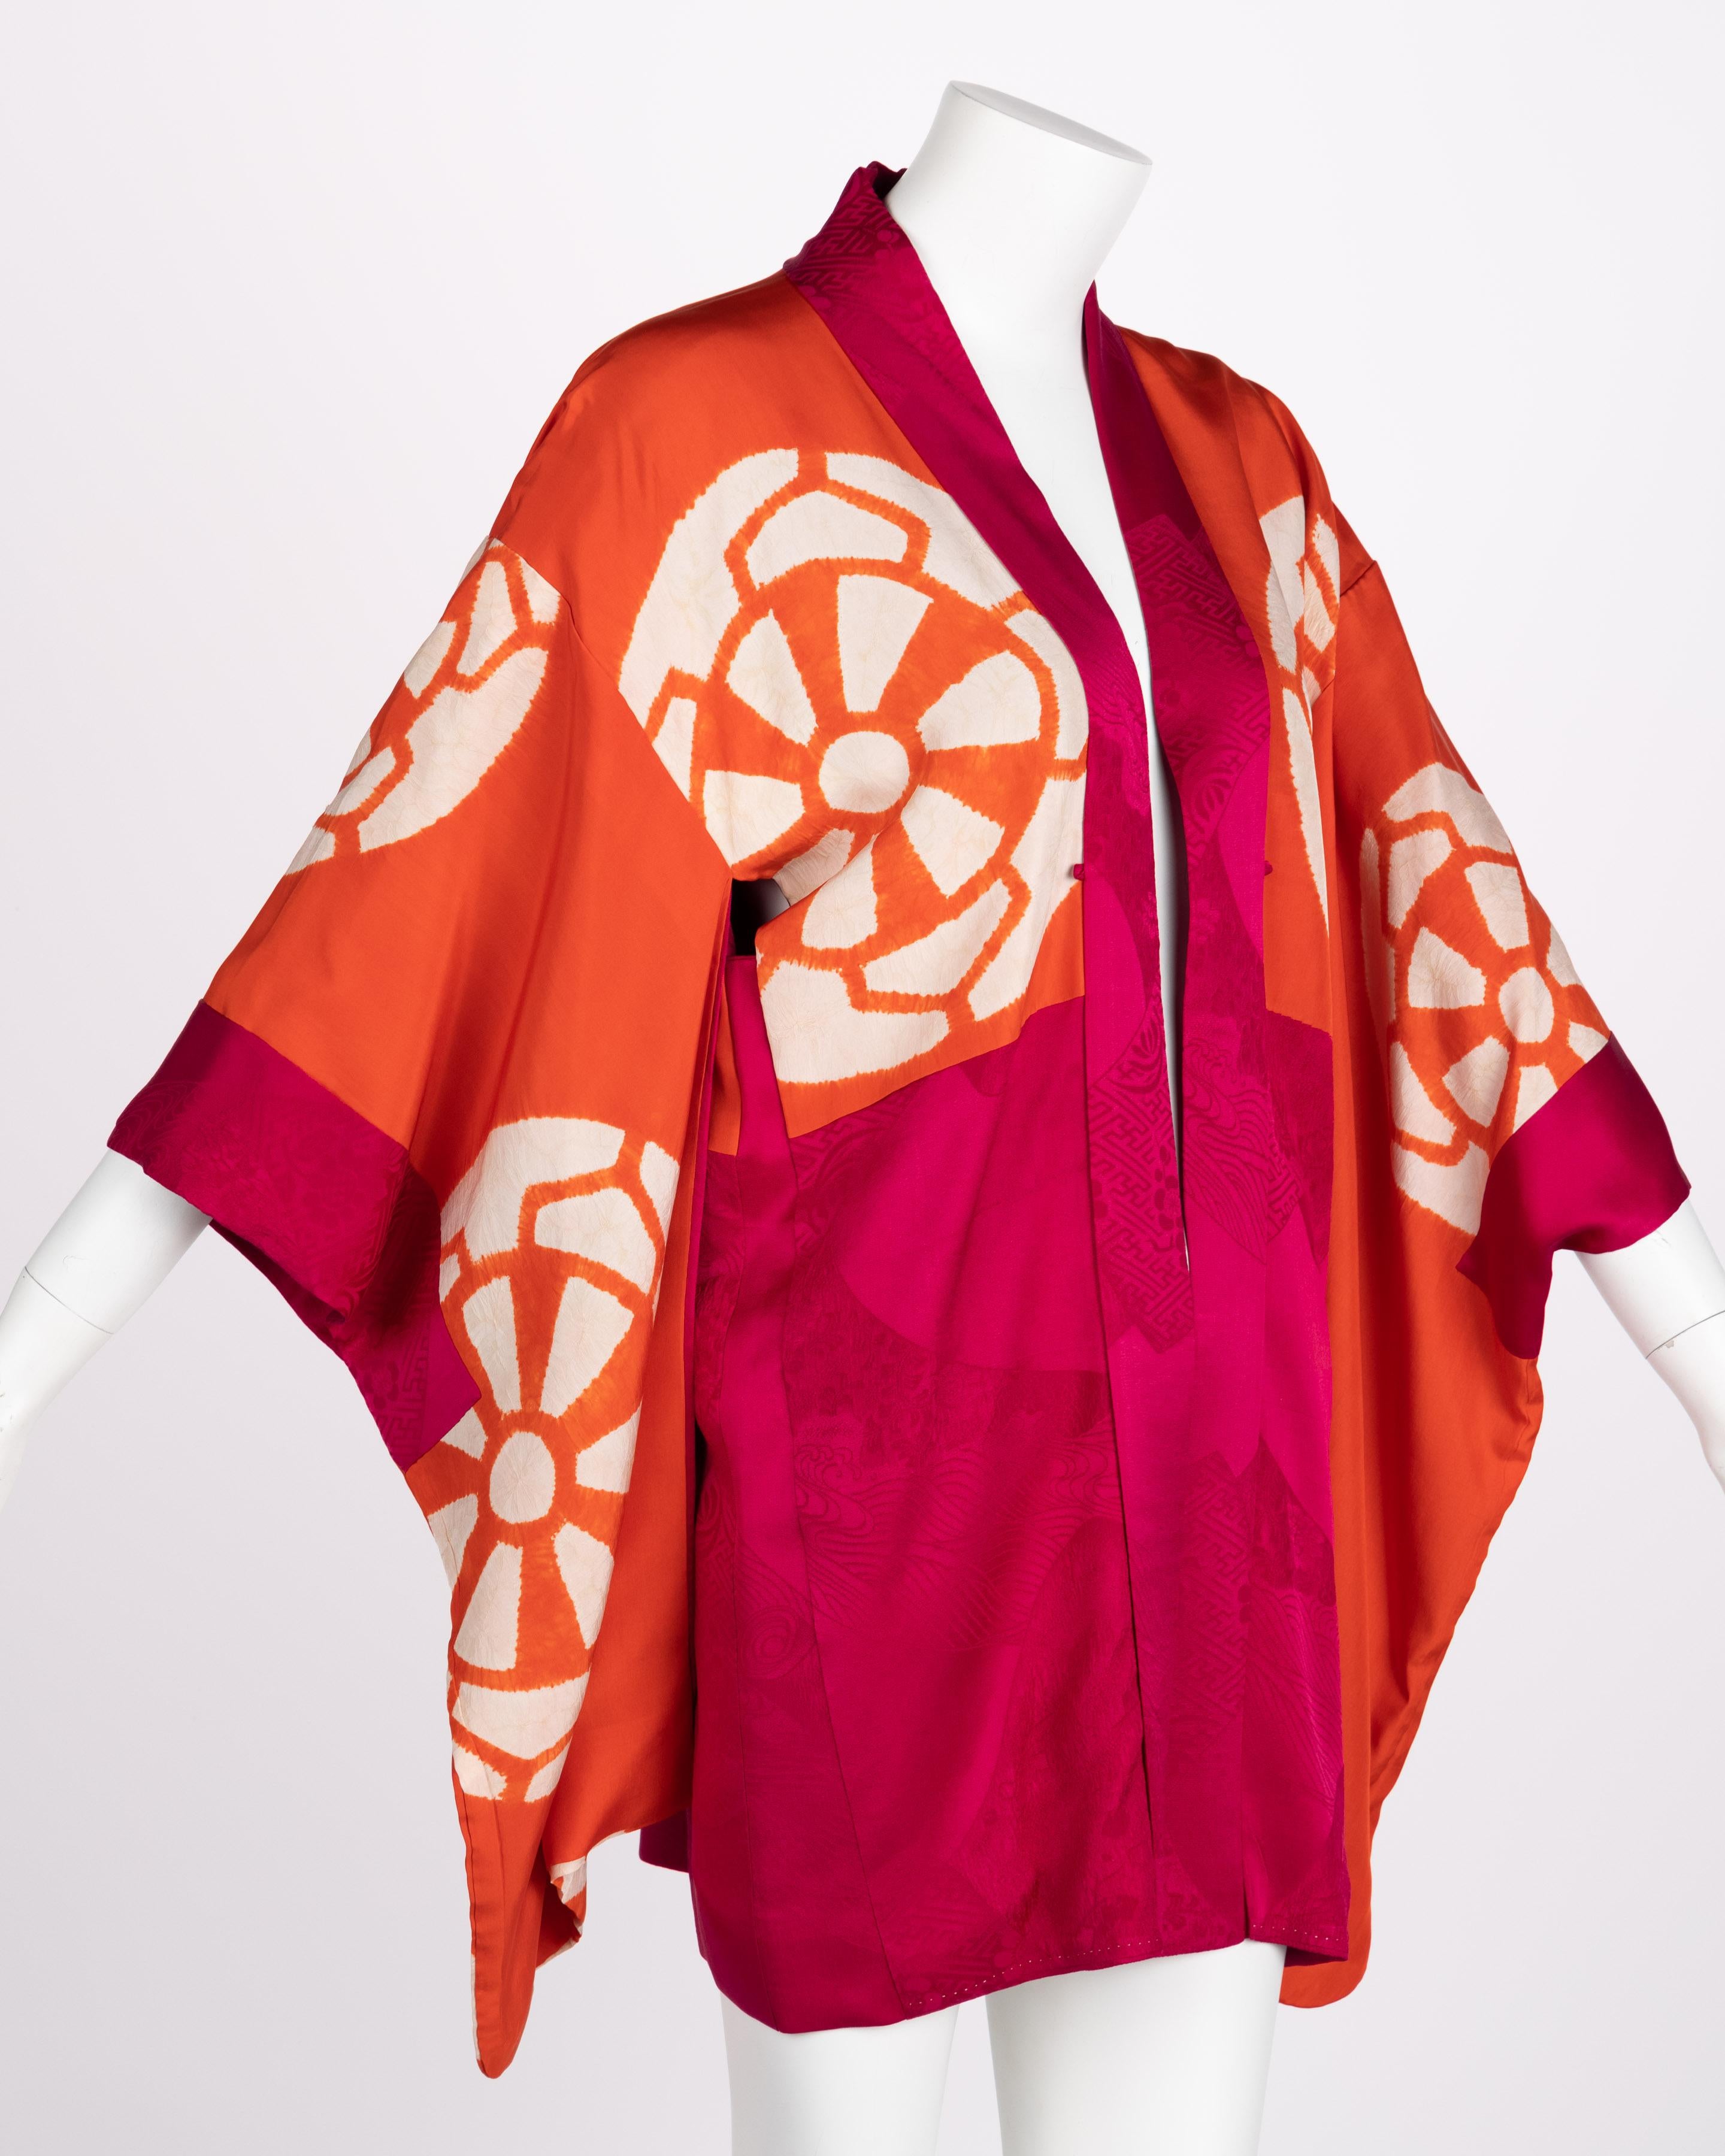 Si la variété et la particularité des types de kimono peuvent être complexes, la coupe d'un kimono est intentionnellement simple. Des coutures minimales permettent à la beauté du tissu de se révéler sans être encombrée de pinces et de plis. L'unité